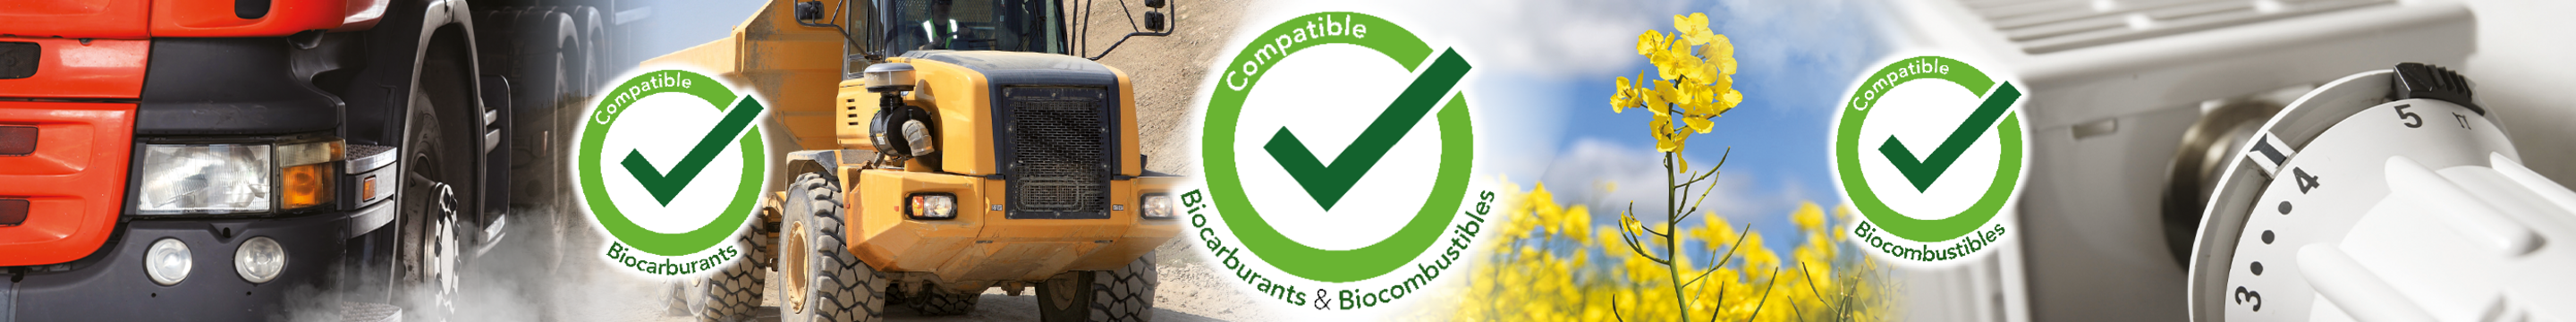 A_320_additif-compatible-biocarburant-et-biocombustible-2800-x-350